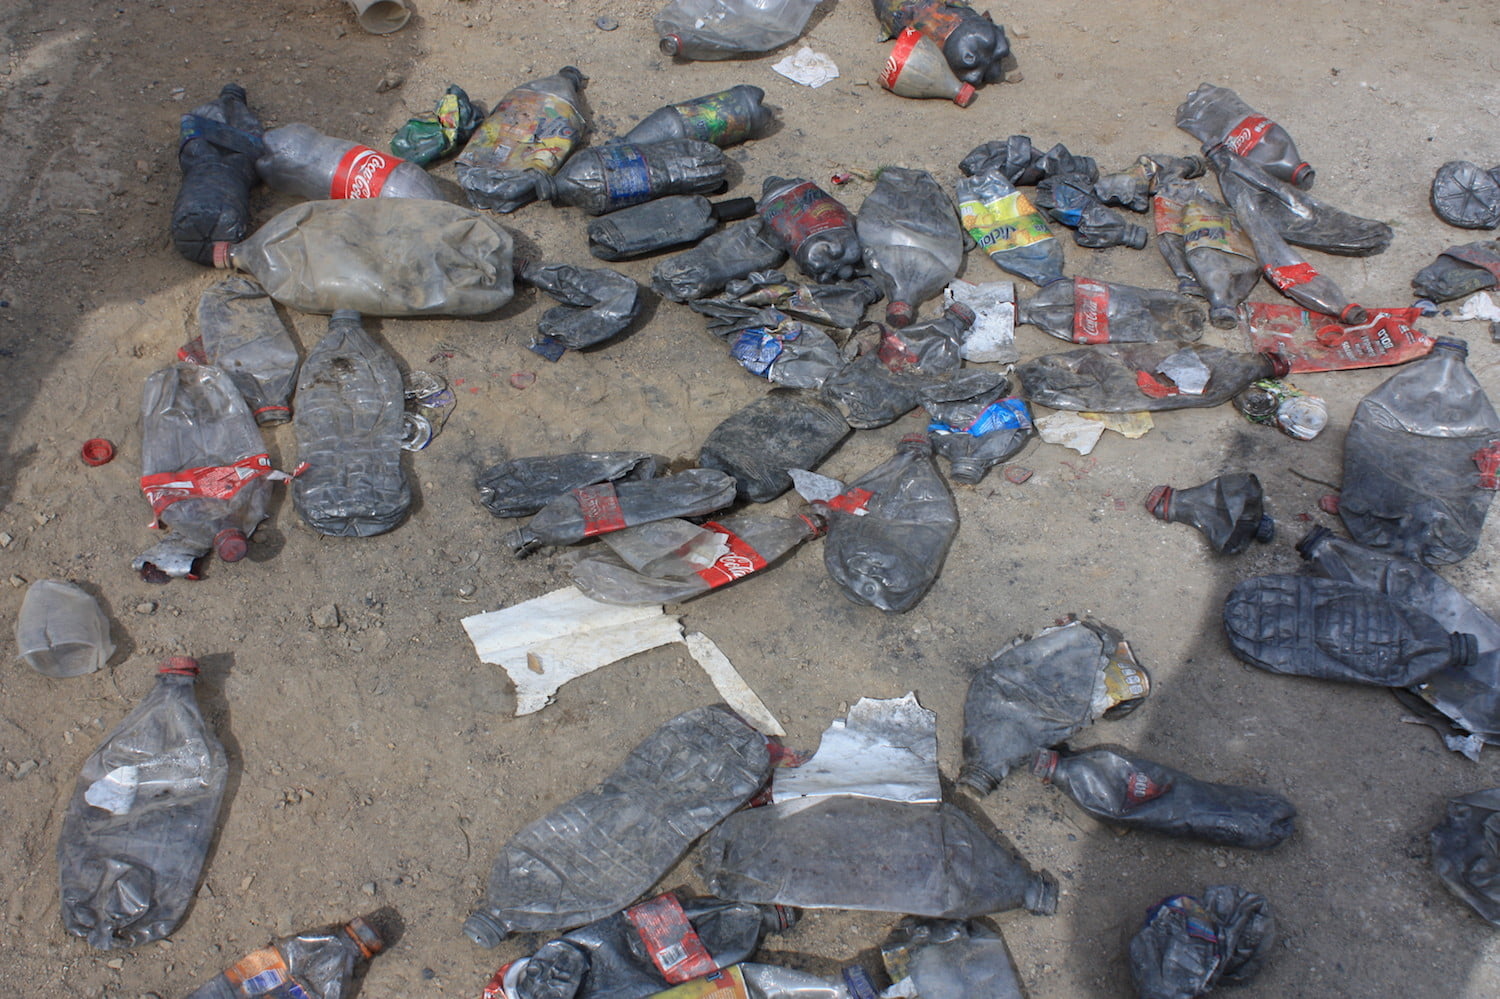 El mercurio se traslada de manera ilegal en botellas de plástico. Foto: Karen de la Torre.